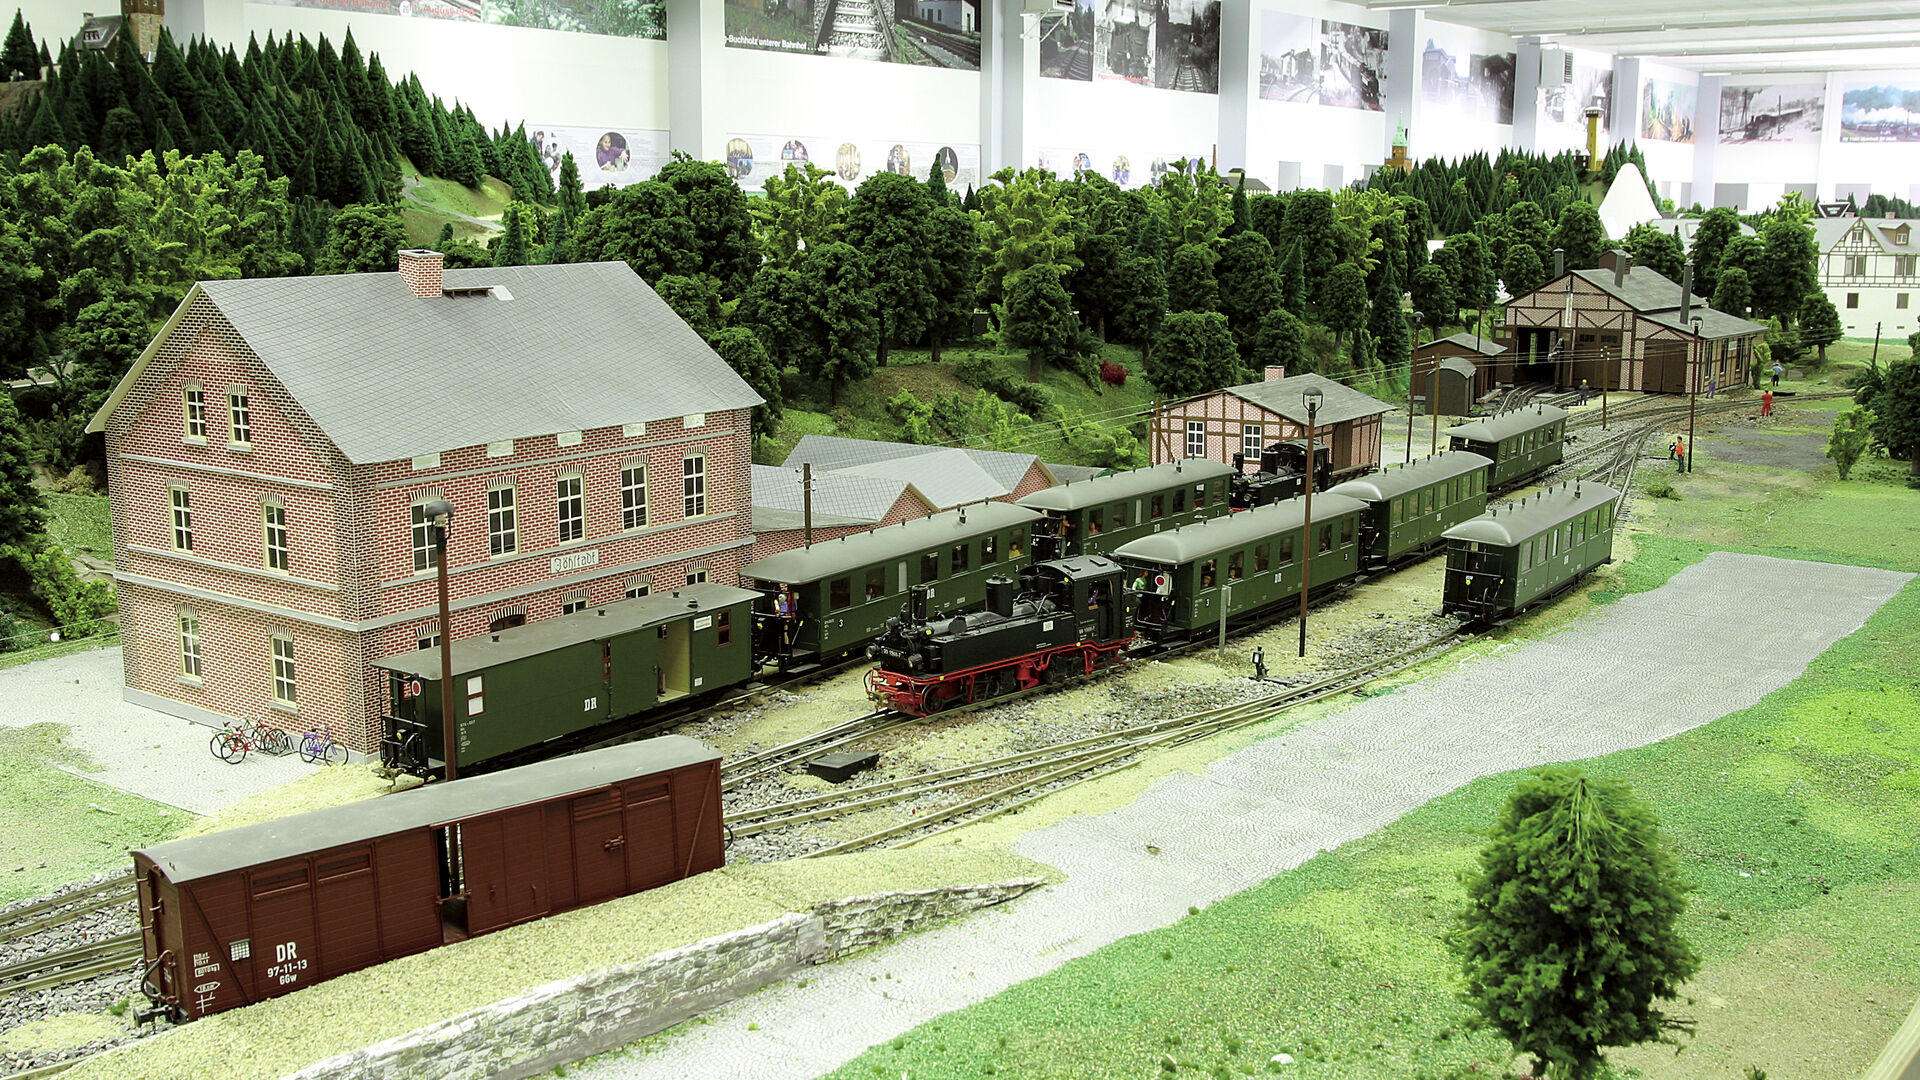 Bahnhof Jöhstadt im Modell 
© Modellbahnland Erzgebirge